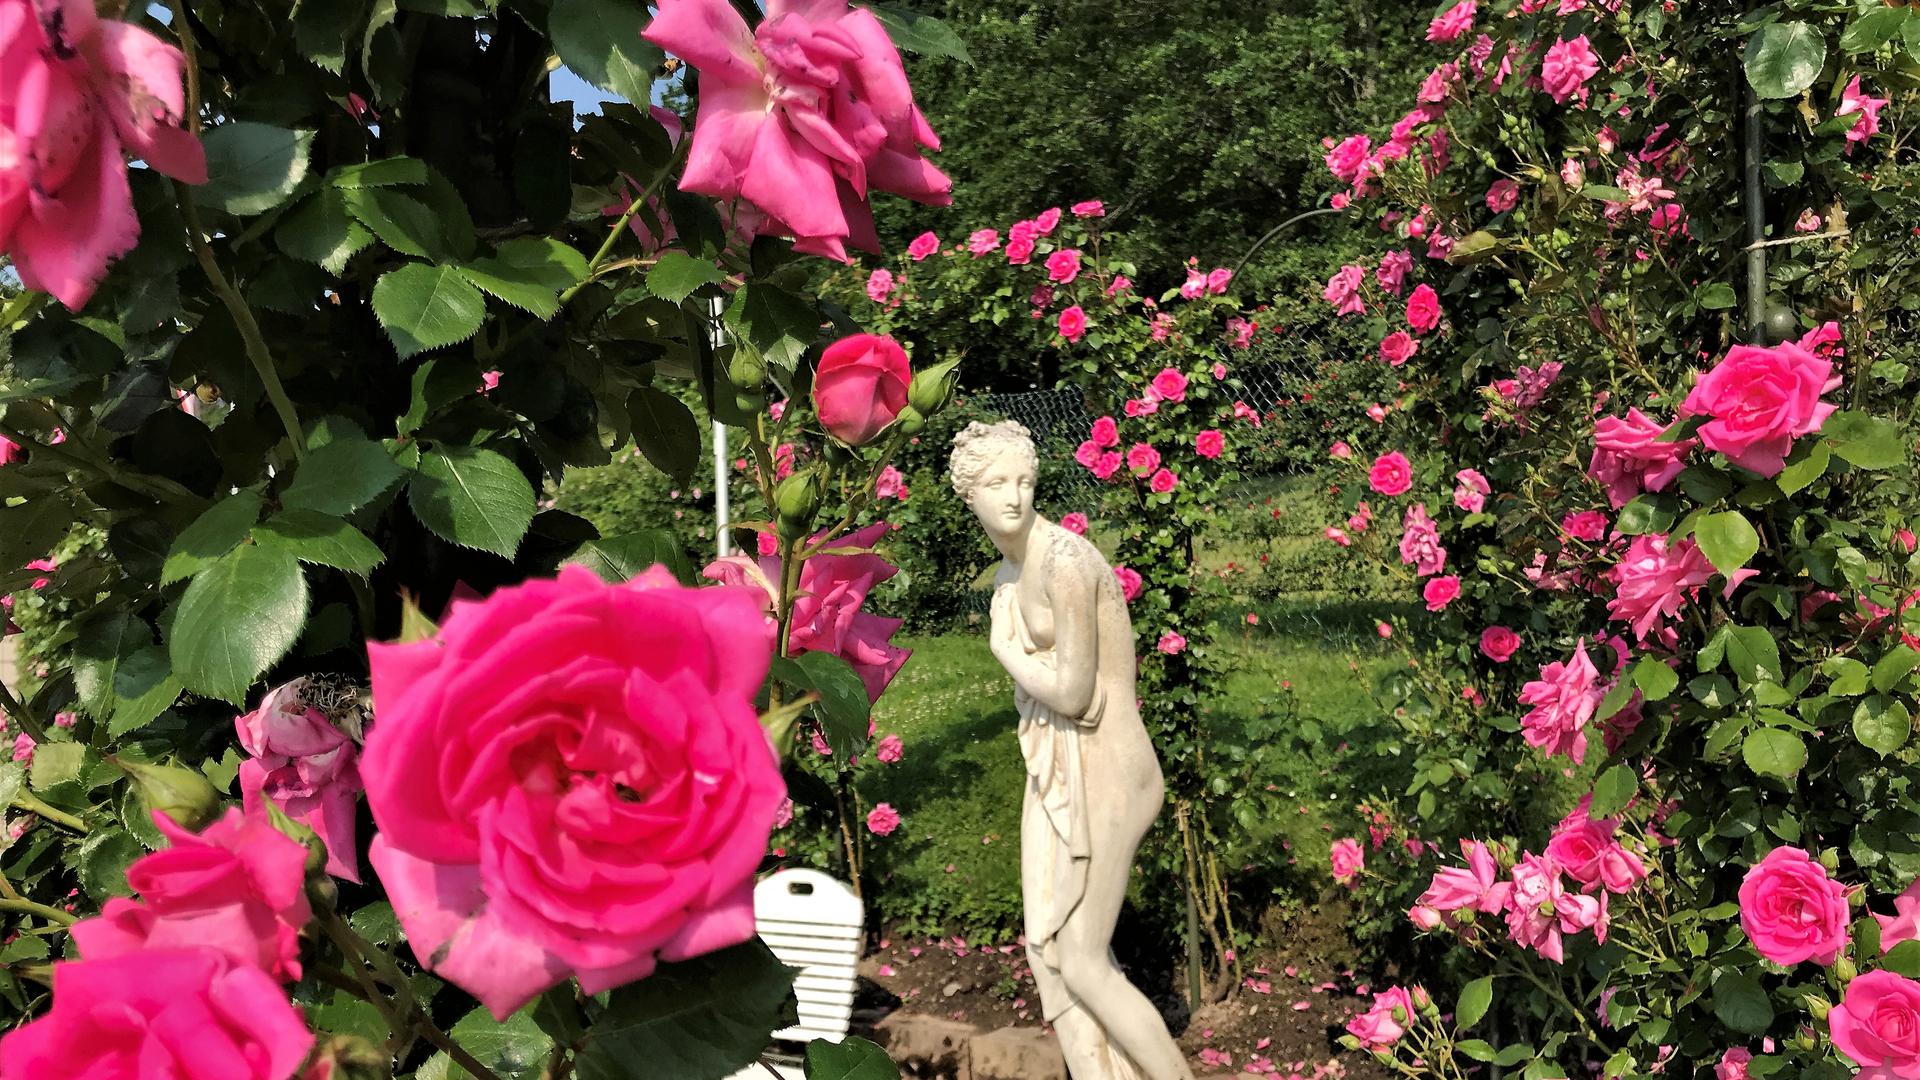 Im Rosenneuheiten-Garten Baden-Baden steht eine Statue zwischen blühenden Rosen.